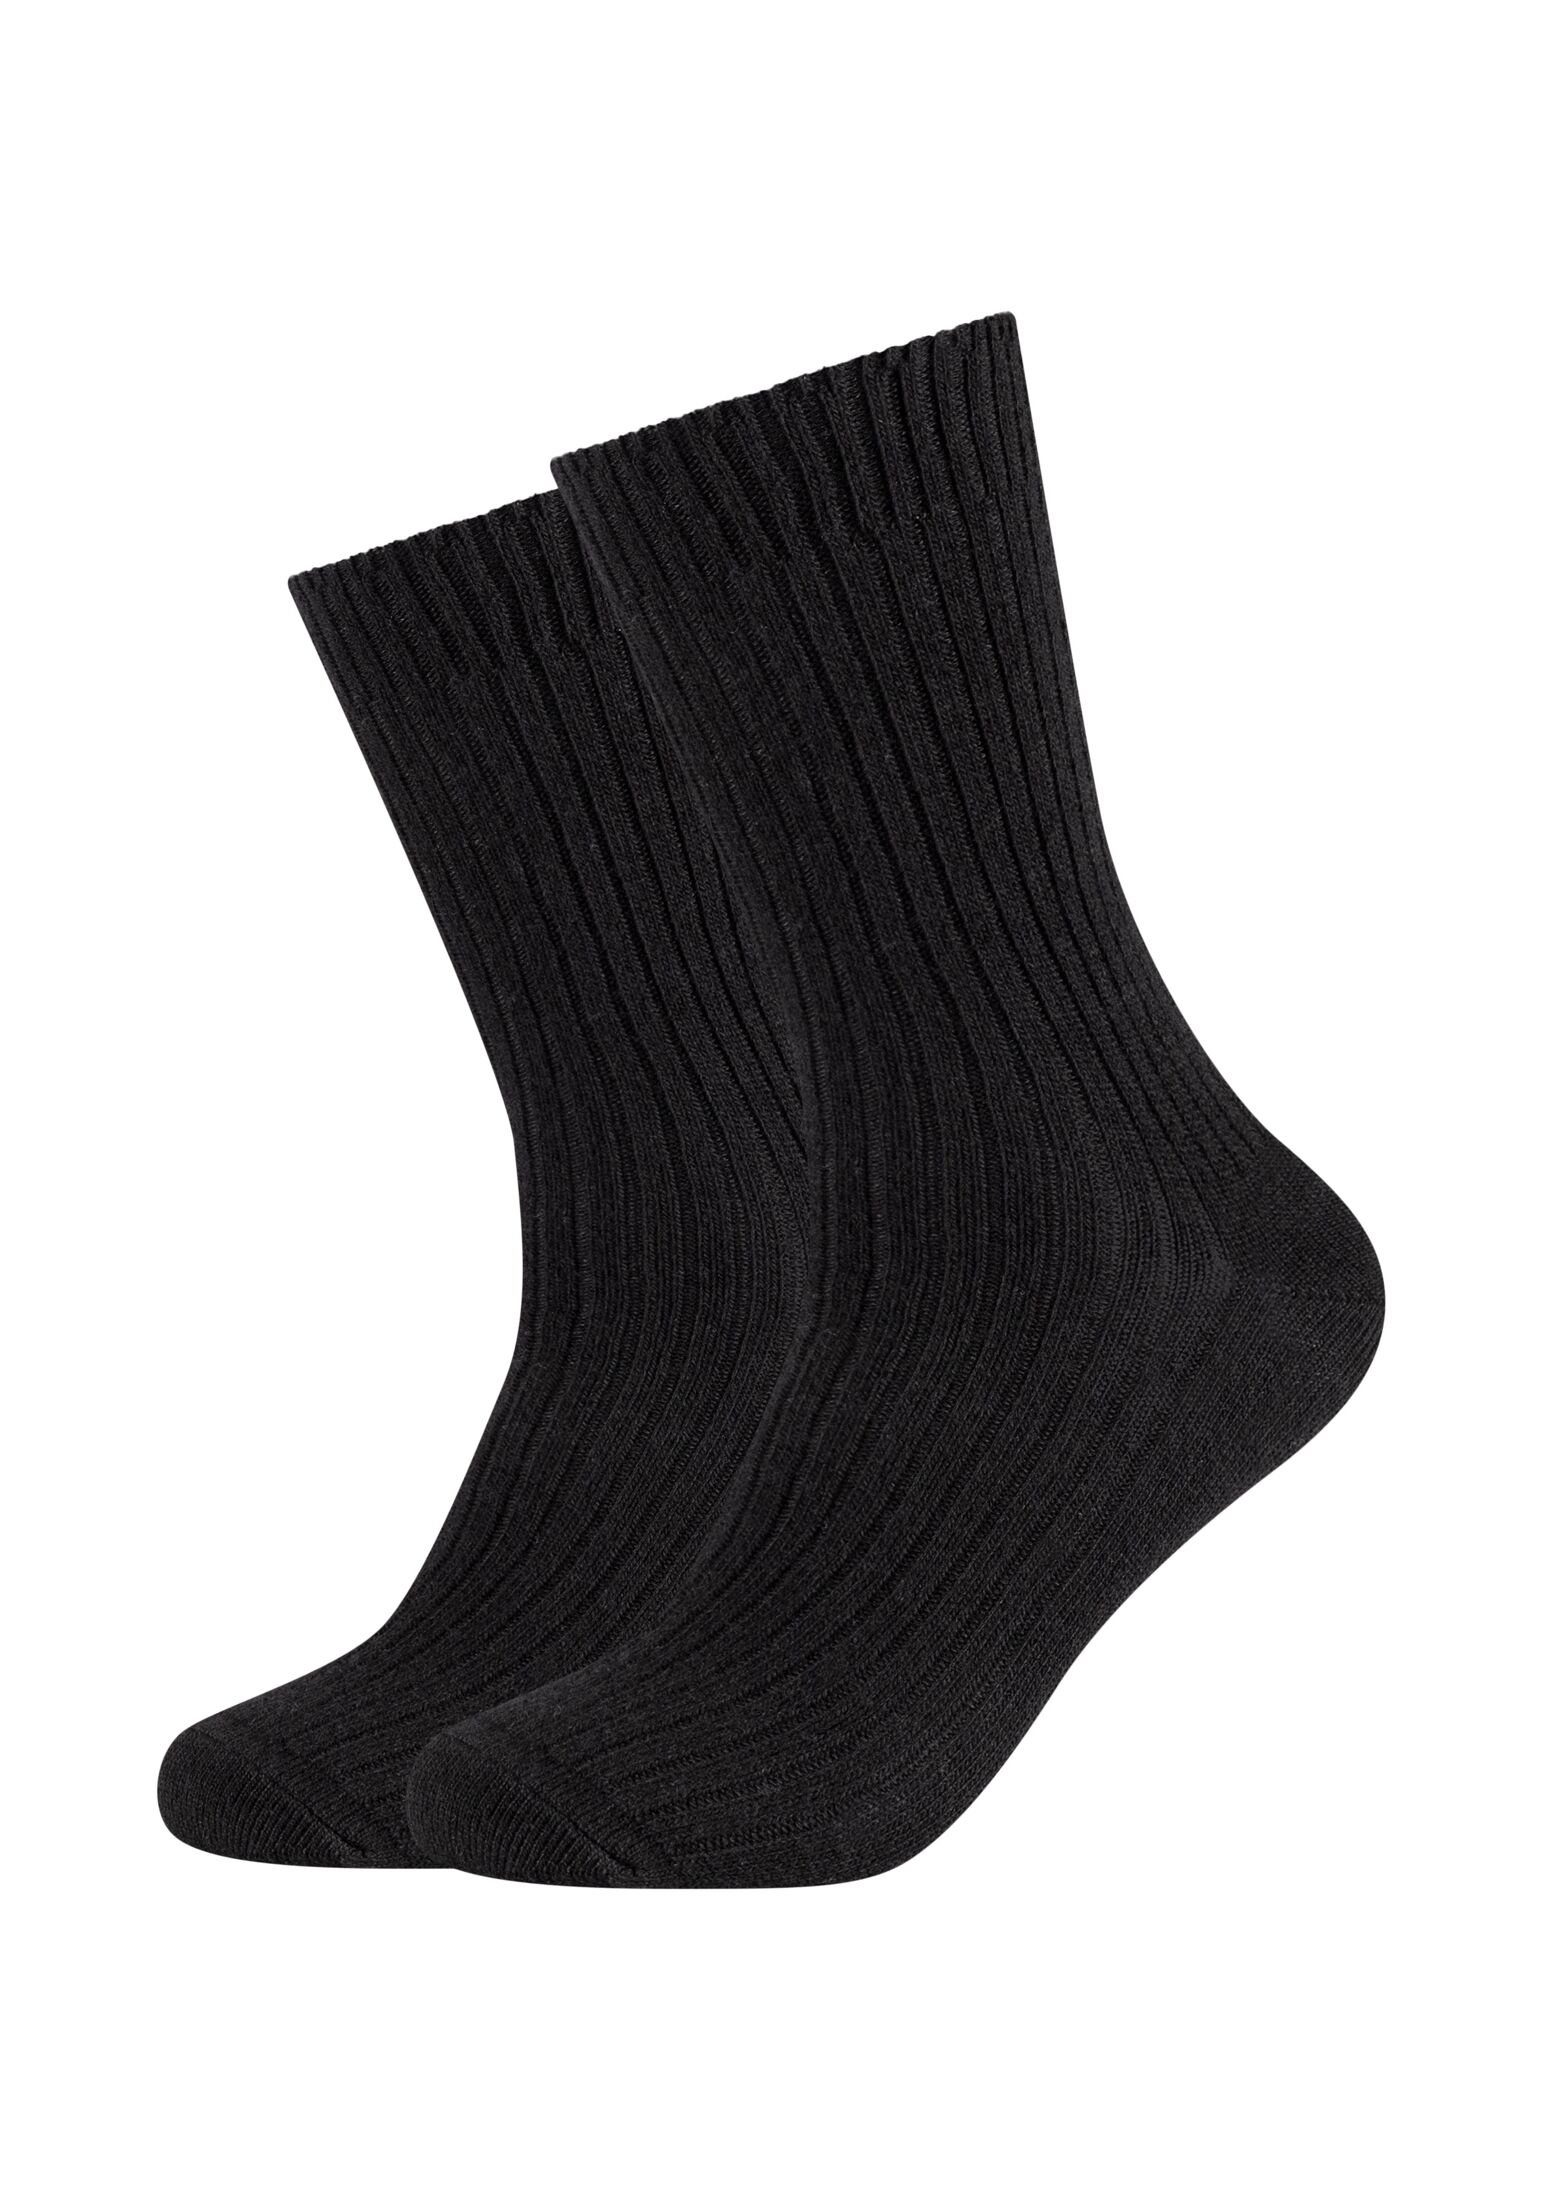 Pack s.Oliver black Socken Socken 2er